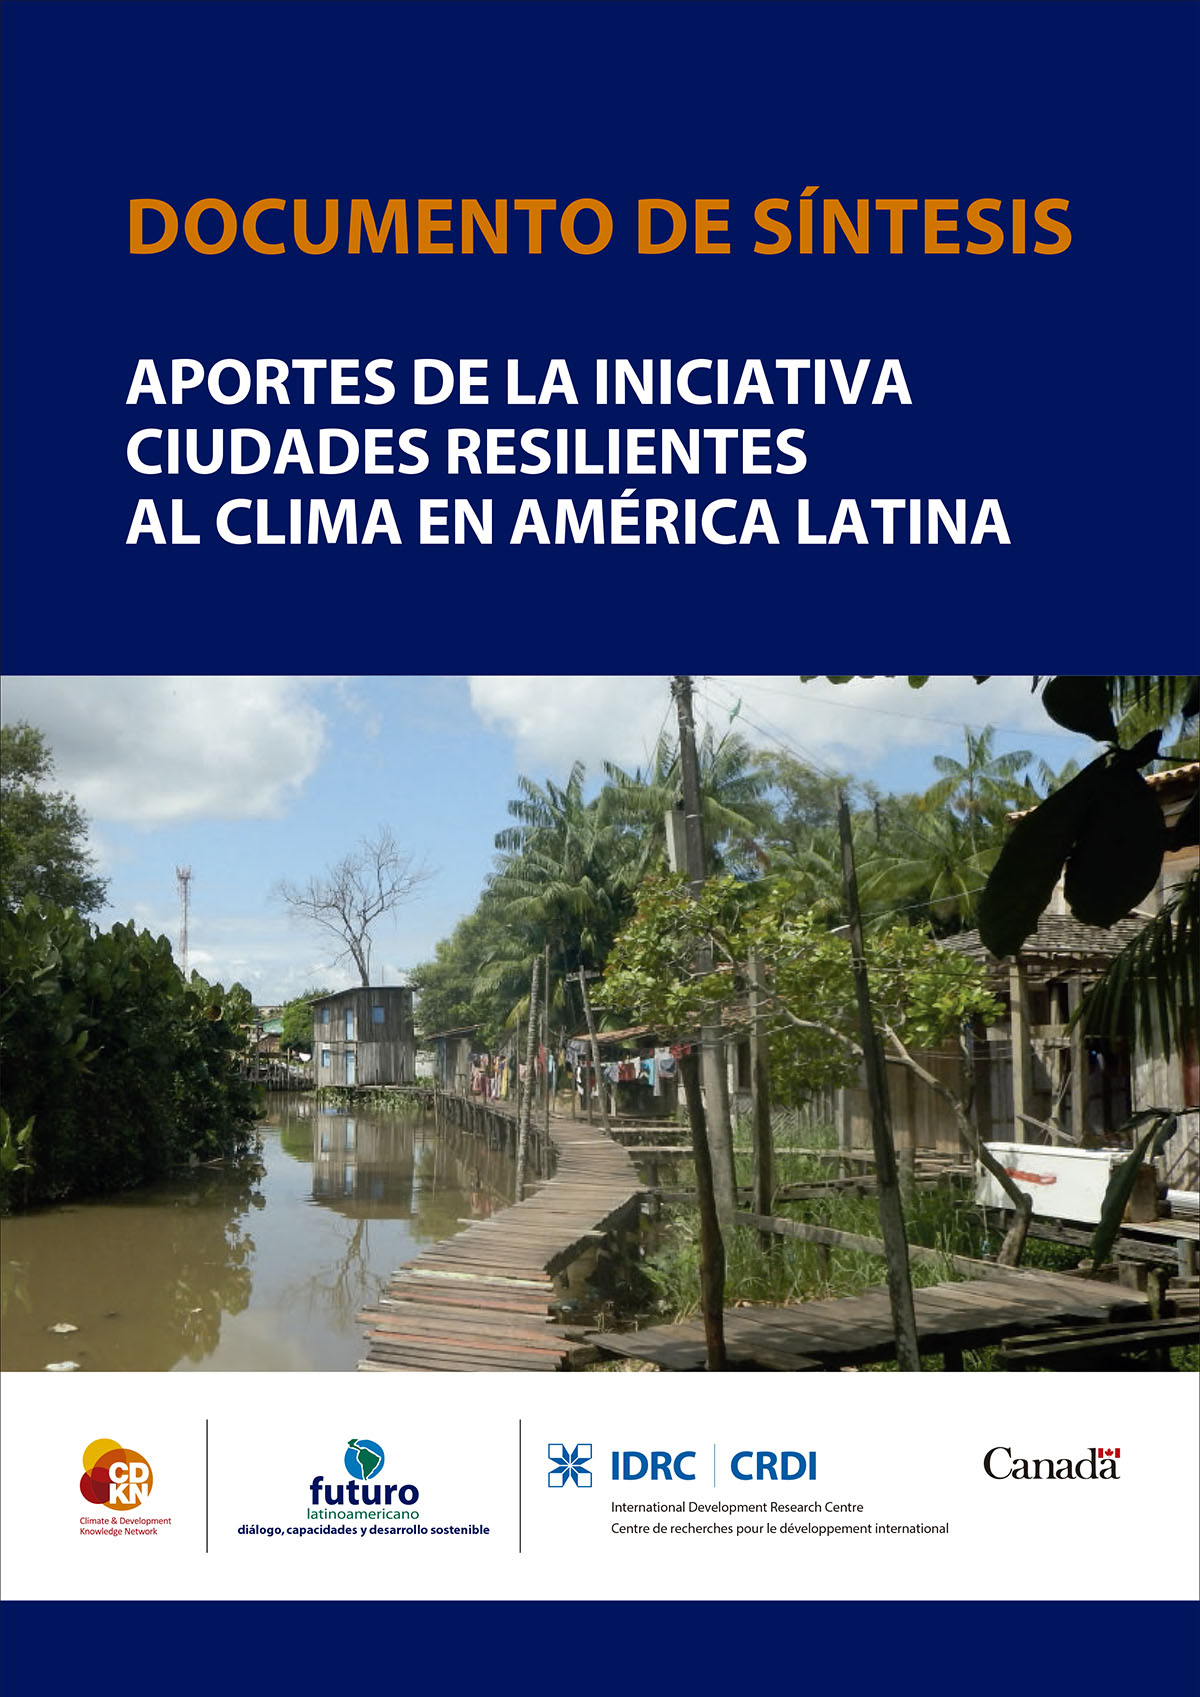 Villamarín, Gabriela <br>Aportes de la Iniciativa Ciudades Resilientes al Clima en América Latina - documento de síntesis<br/>Quito: Centro Internacional de Investigaciones para el Desarrollo (IDRC) : Alianza Clima y Desarrollo (CDKN) : Fundación Futuro Latinoamericano (FFLA). 2019. 70 páginas 